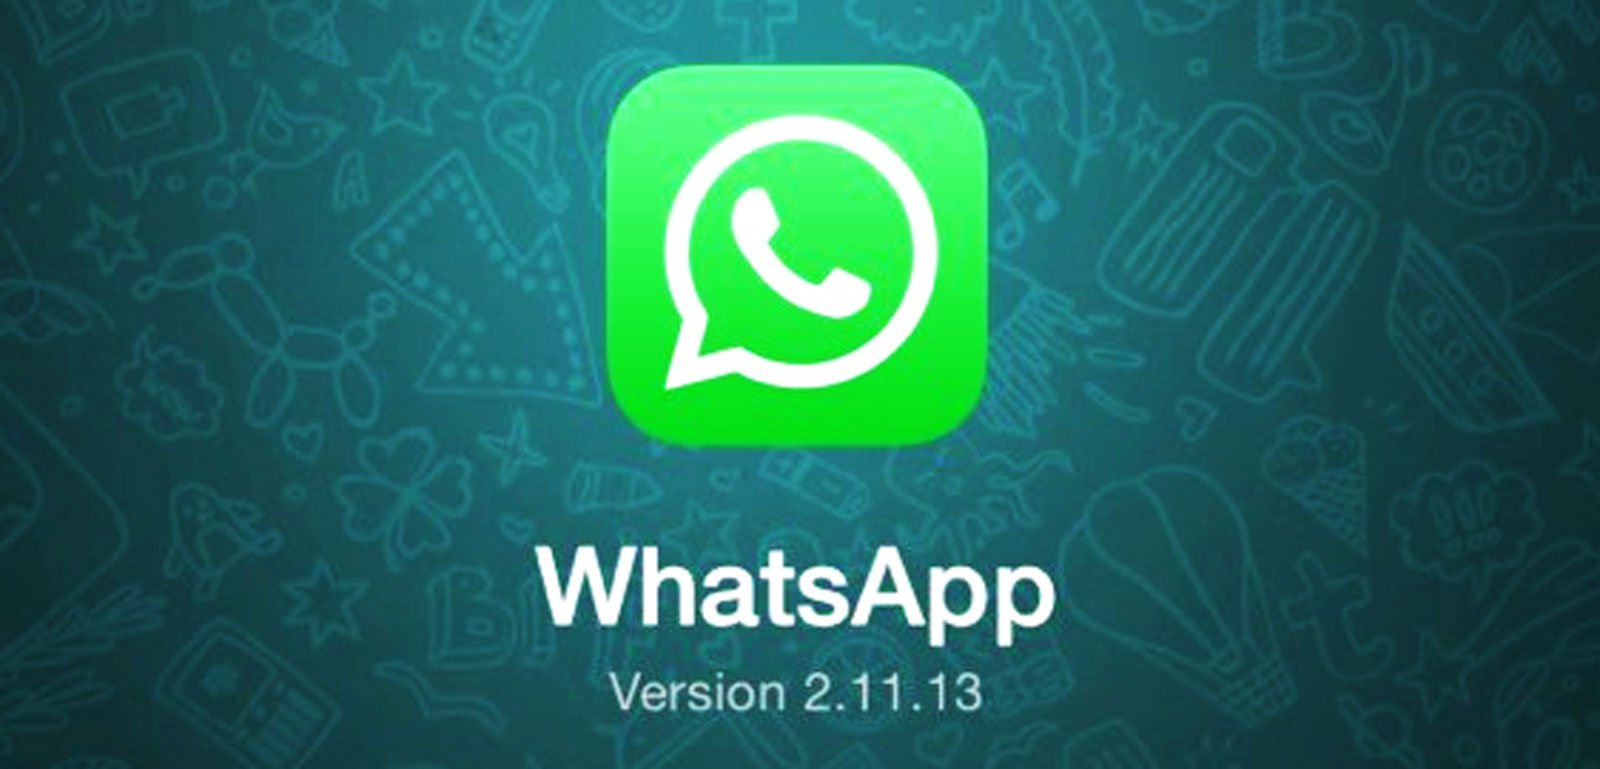 WhatsApp: Wann kommt WhatsApp Update für iPhone 6 und iPhone 6 Plus? 11